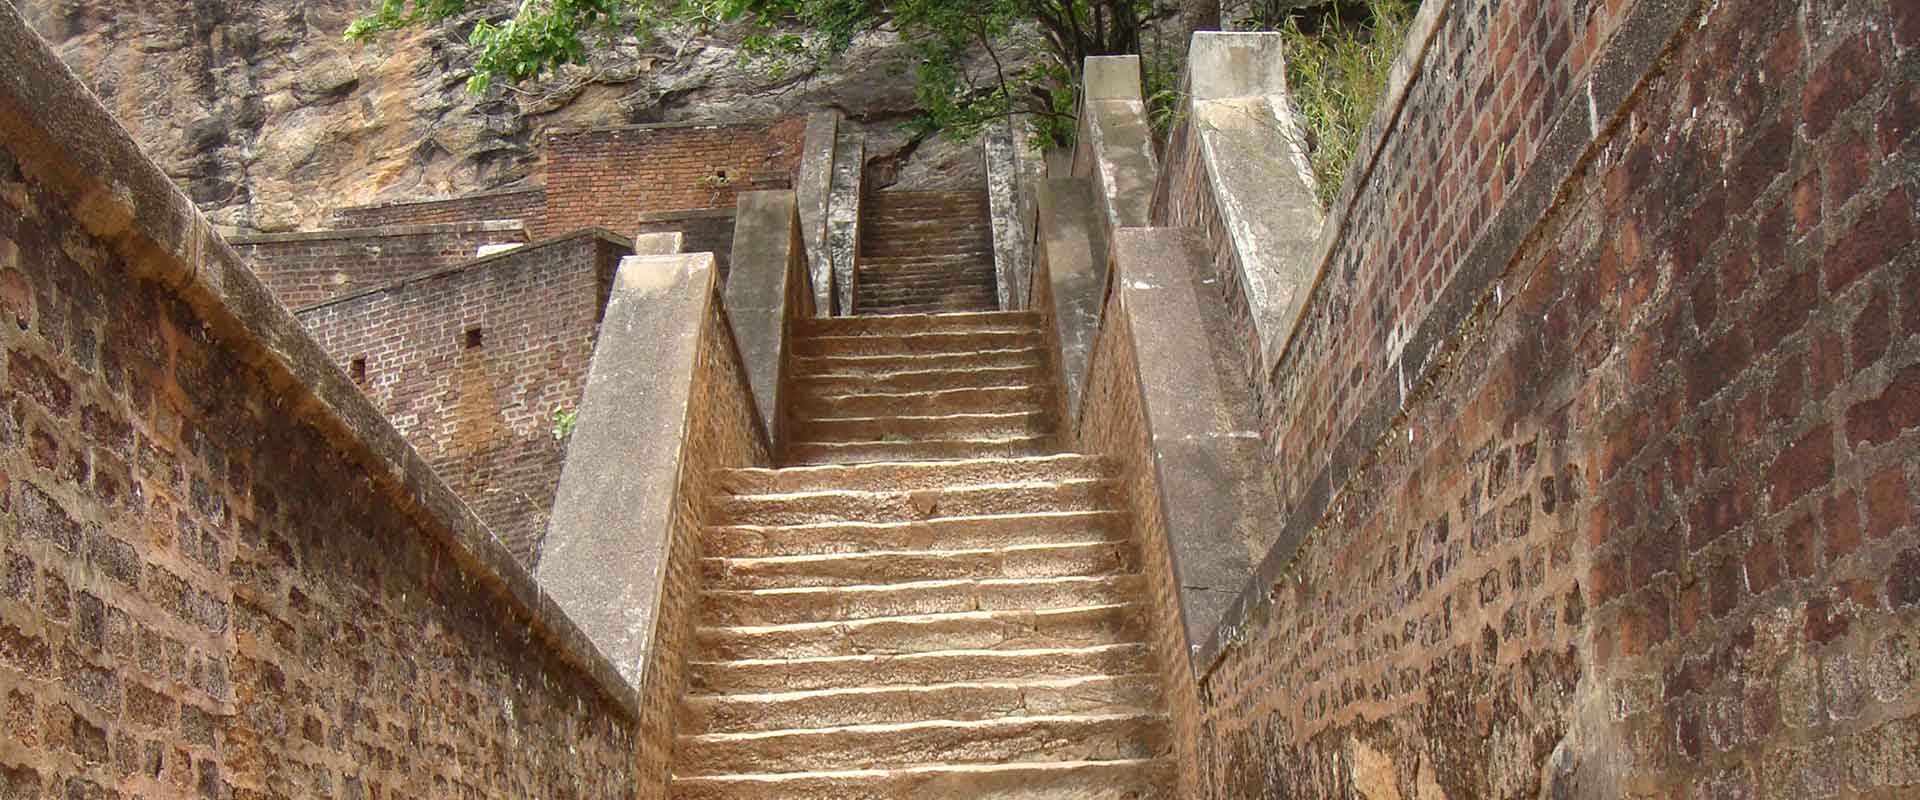 Stairway of Sigiriya Fortress Sri Lanka